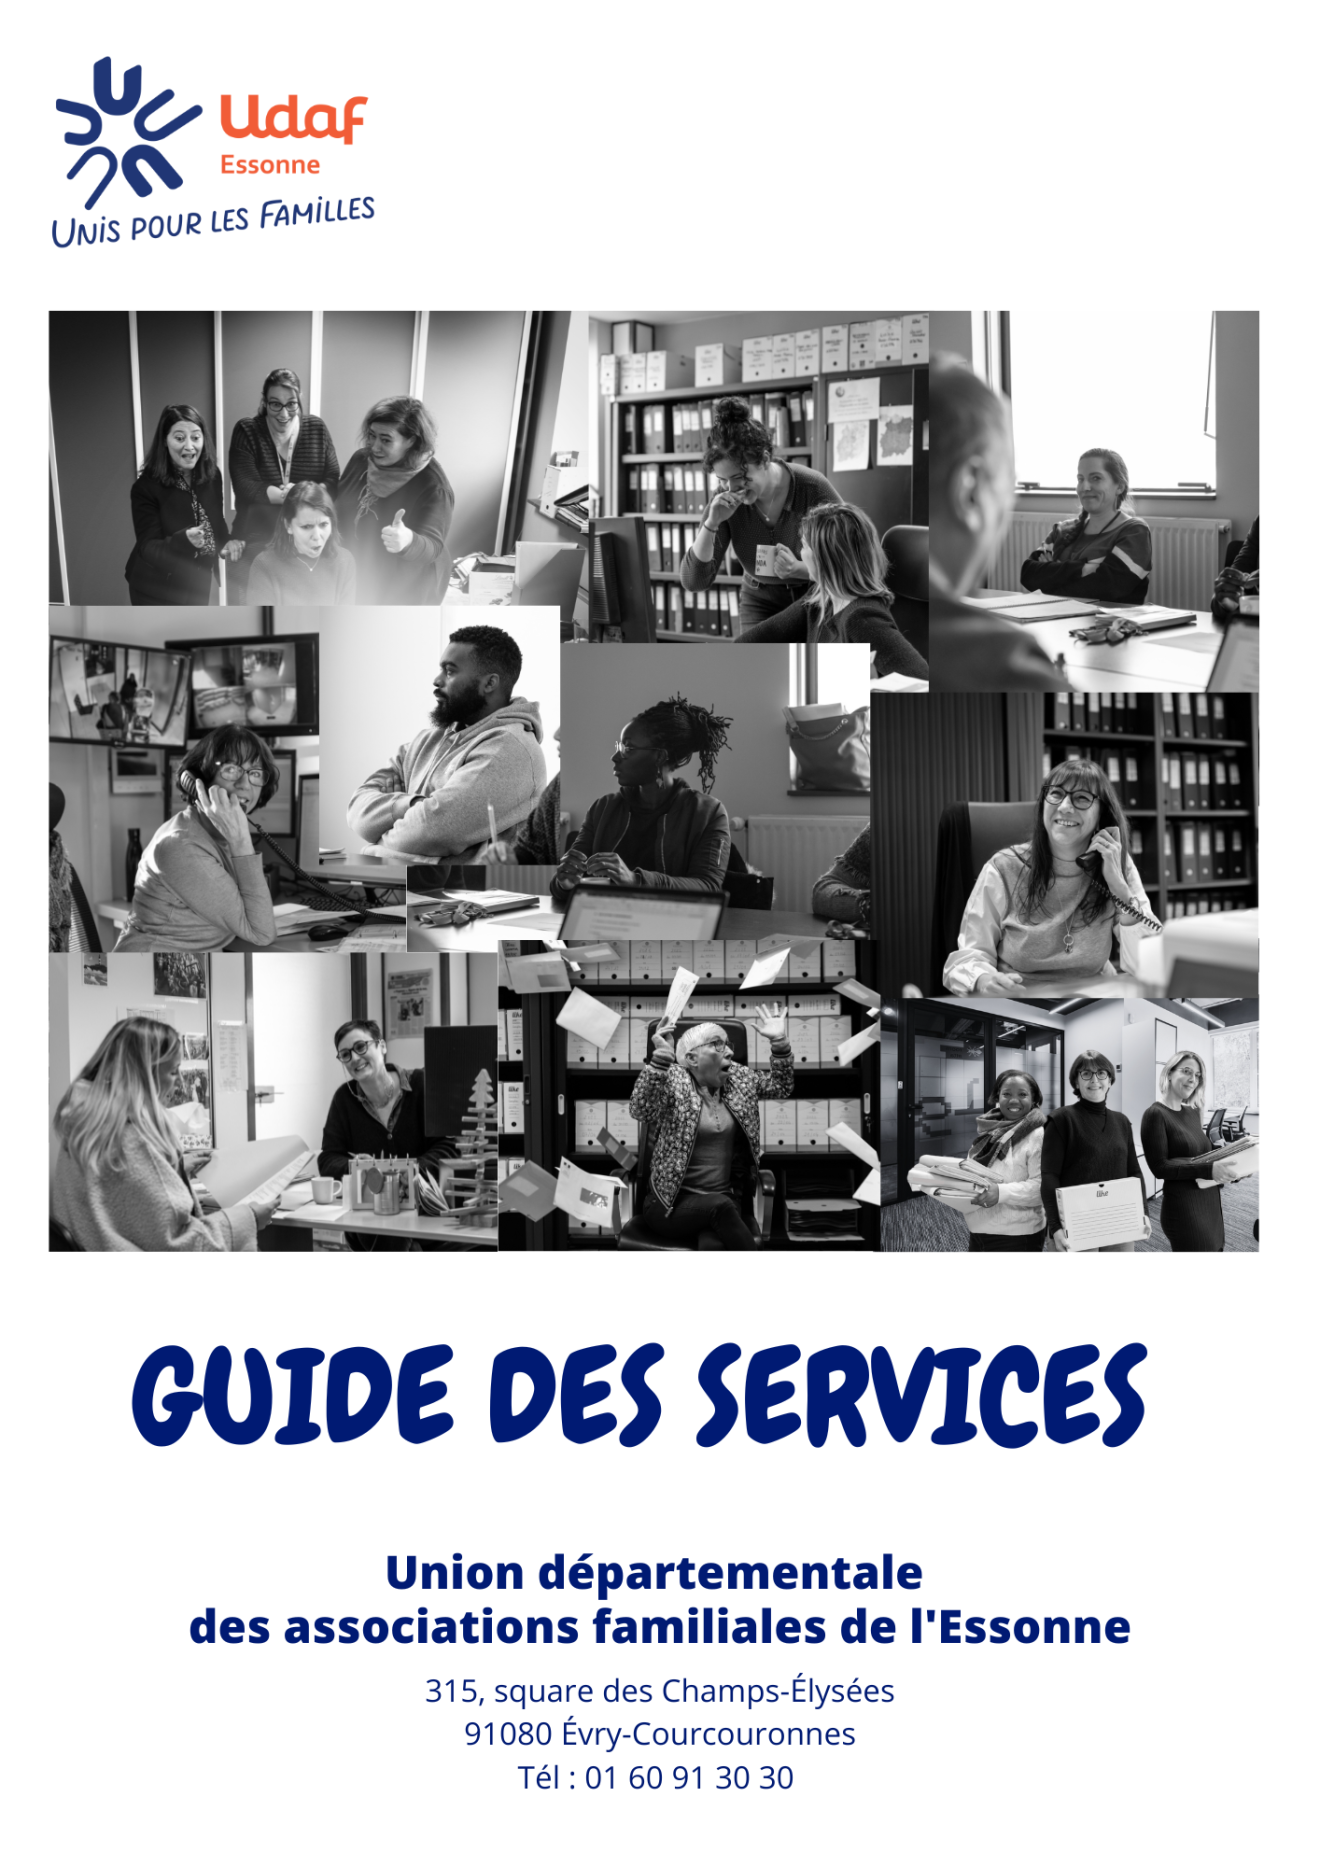 Nouveau guide des services de l'Udaf de l'Essonne